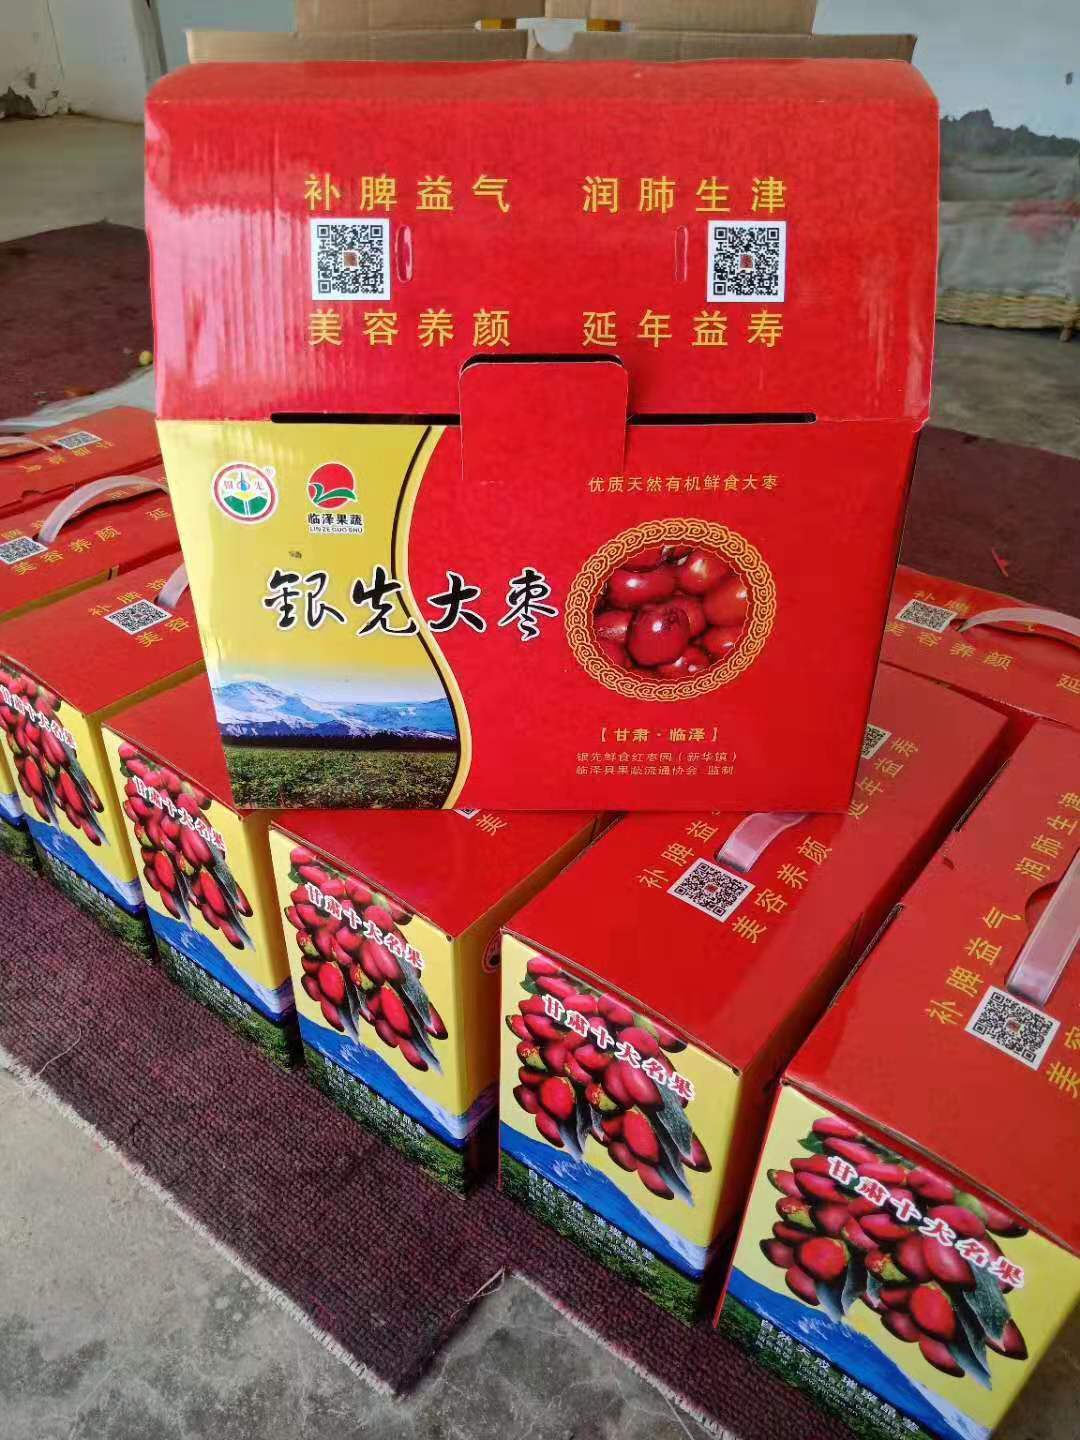 5银先葡萄专业合作社生产的有机认证大枣成熟进京啦.jpg